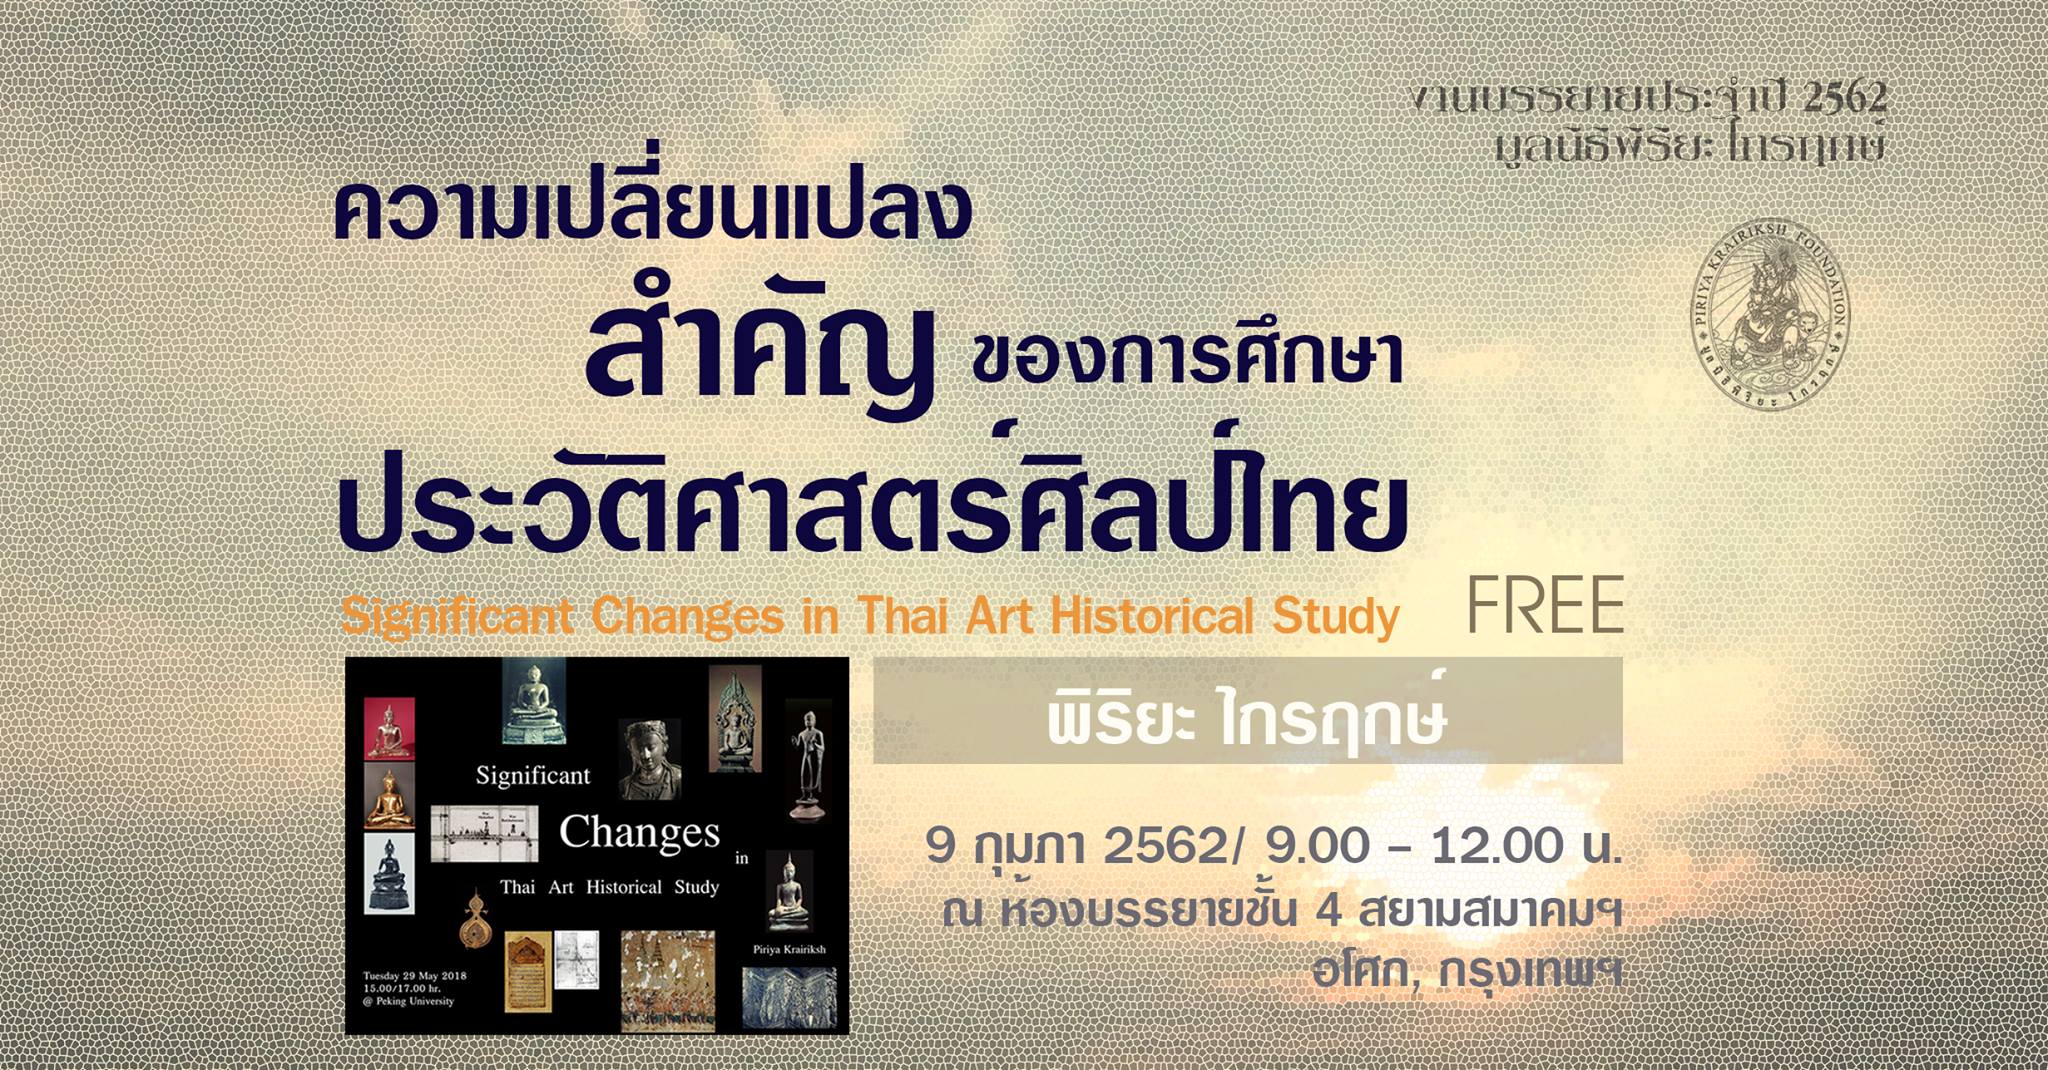 ความเปลี่ยนแปลงสำคัญของการศึกษาประวัติศาสตร์ศิลป์ไทย สยามสมาคม